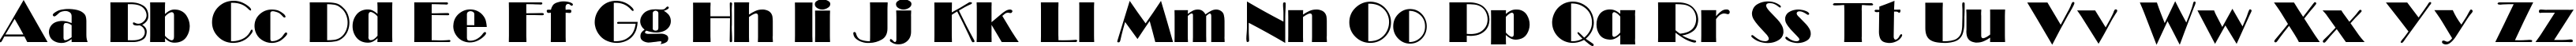 Пример написания английского алфавита шрифтом GABroadway-Normal